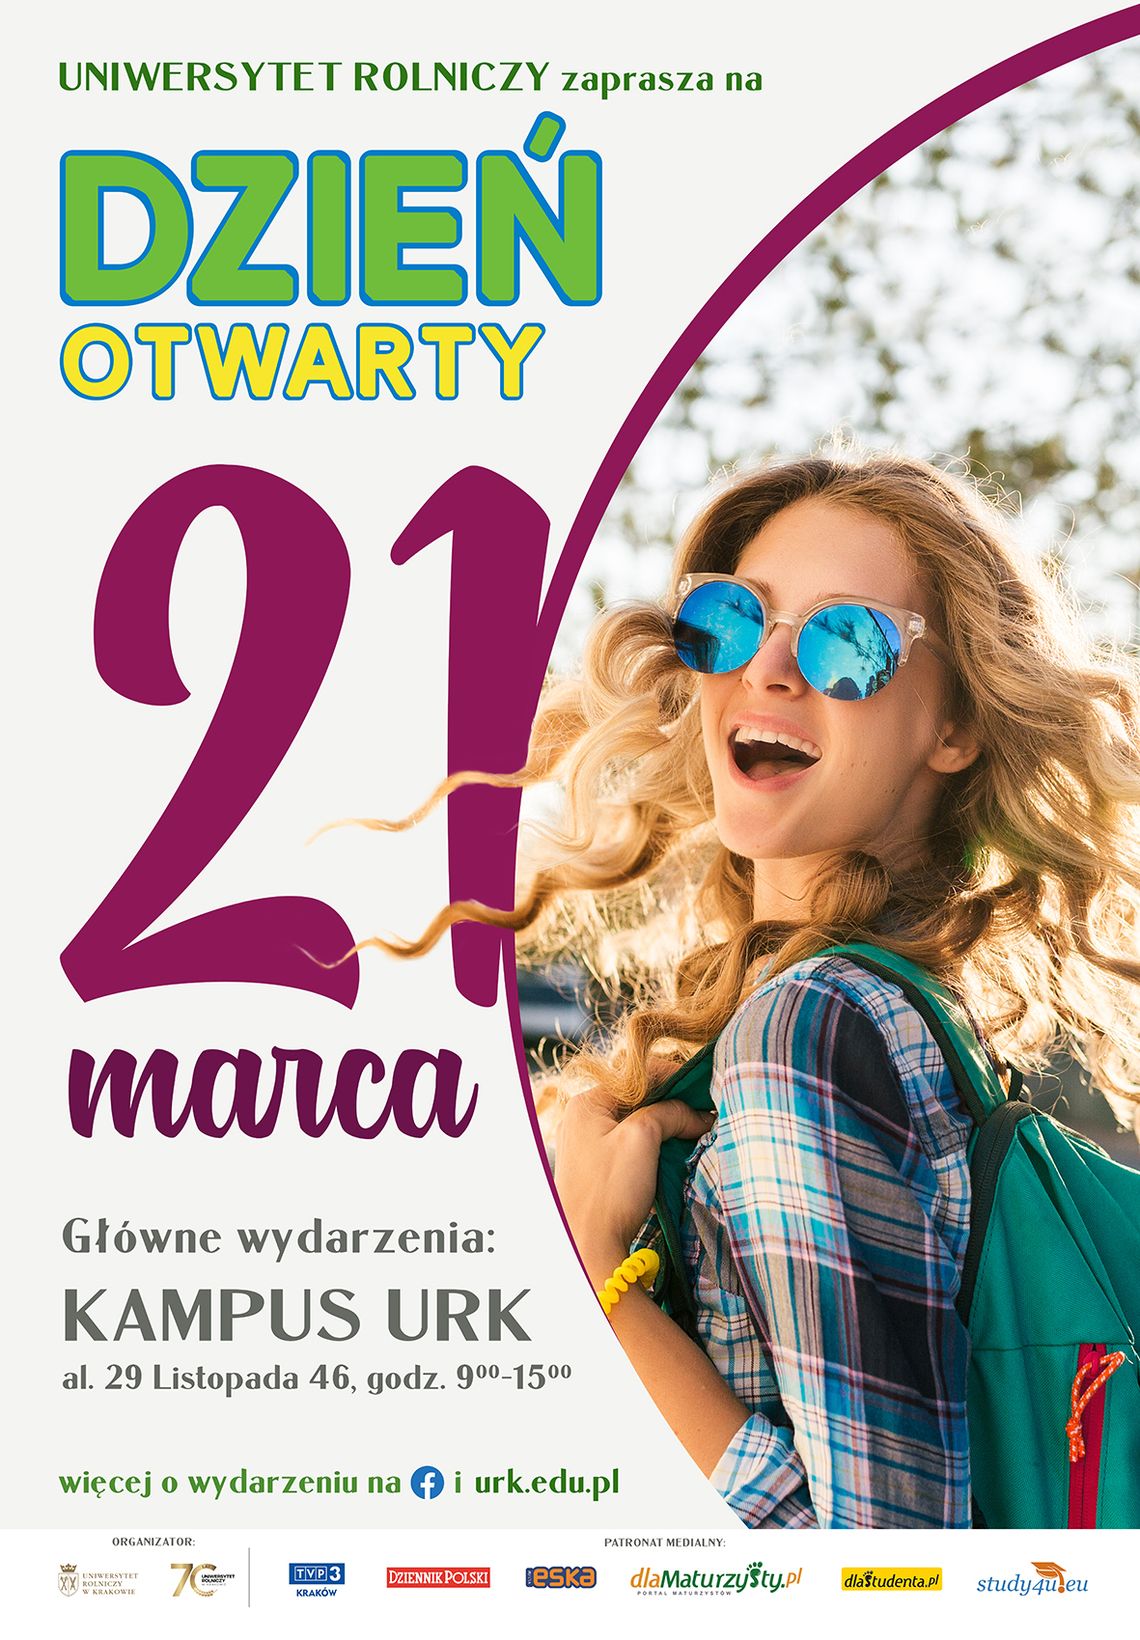 Dziś odbędzie się Dzień Otwarty Uniwersytetu Rolniczego w Krakowie